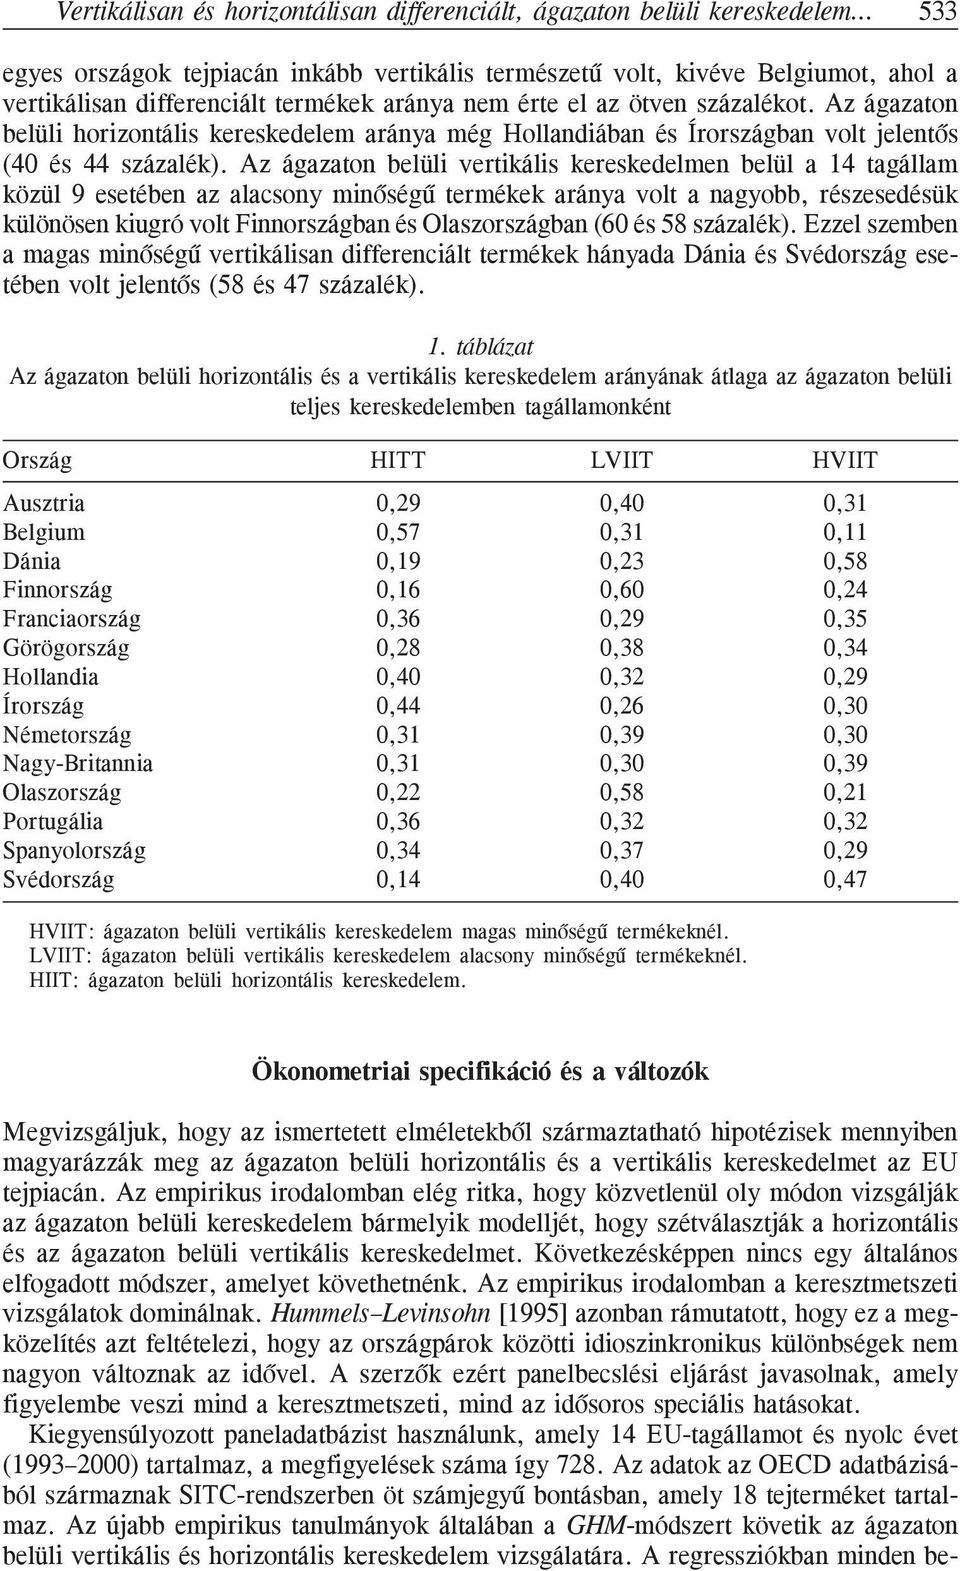 Az ágazaton belüli vertikális kereskedelmen belül a 14 tagállam közül 9 esetében az alacsony minõségû termékek aránya volt a nagyobb, részesedésük különösen kiugró volt Finnországban és